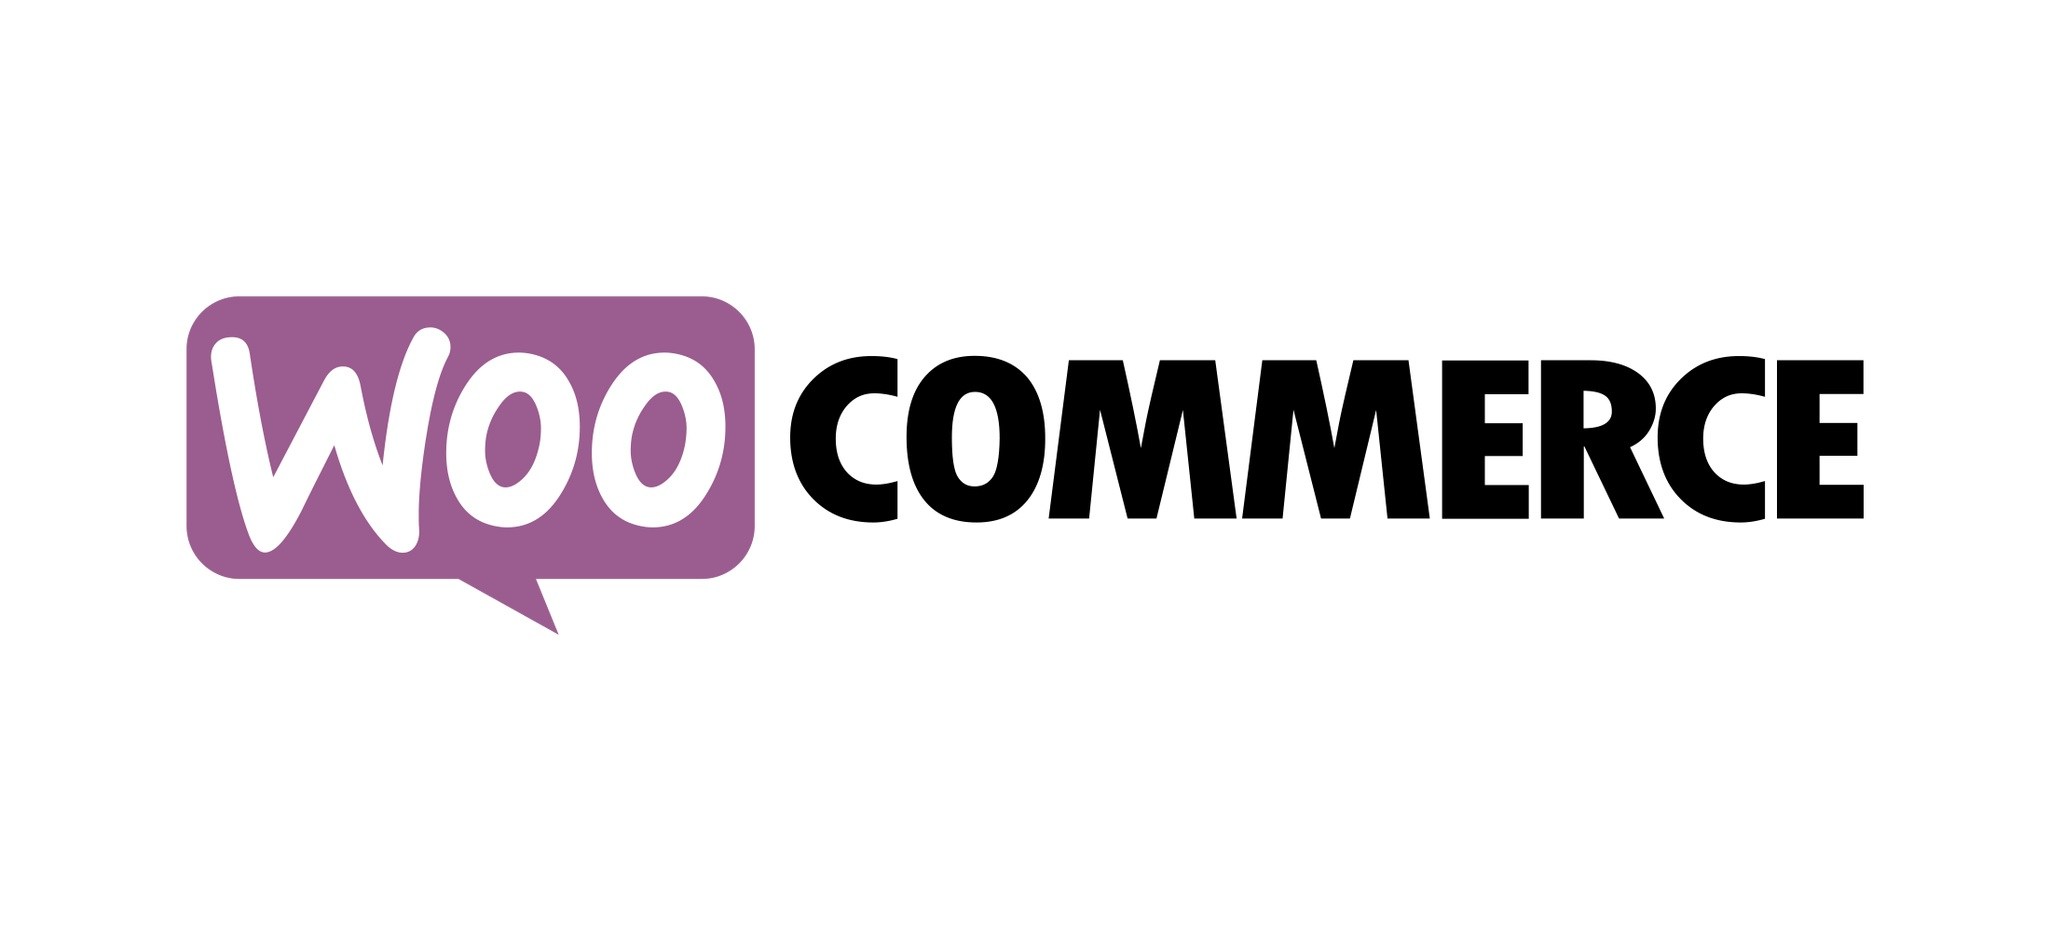 WooCommerce предлагает пользователям полезные расширения для увеличения продаж в онлайн магазине